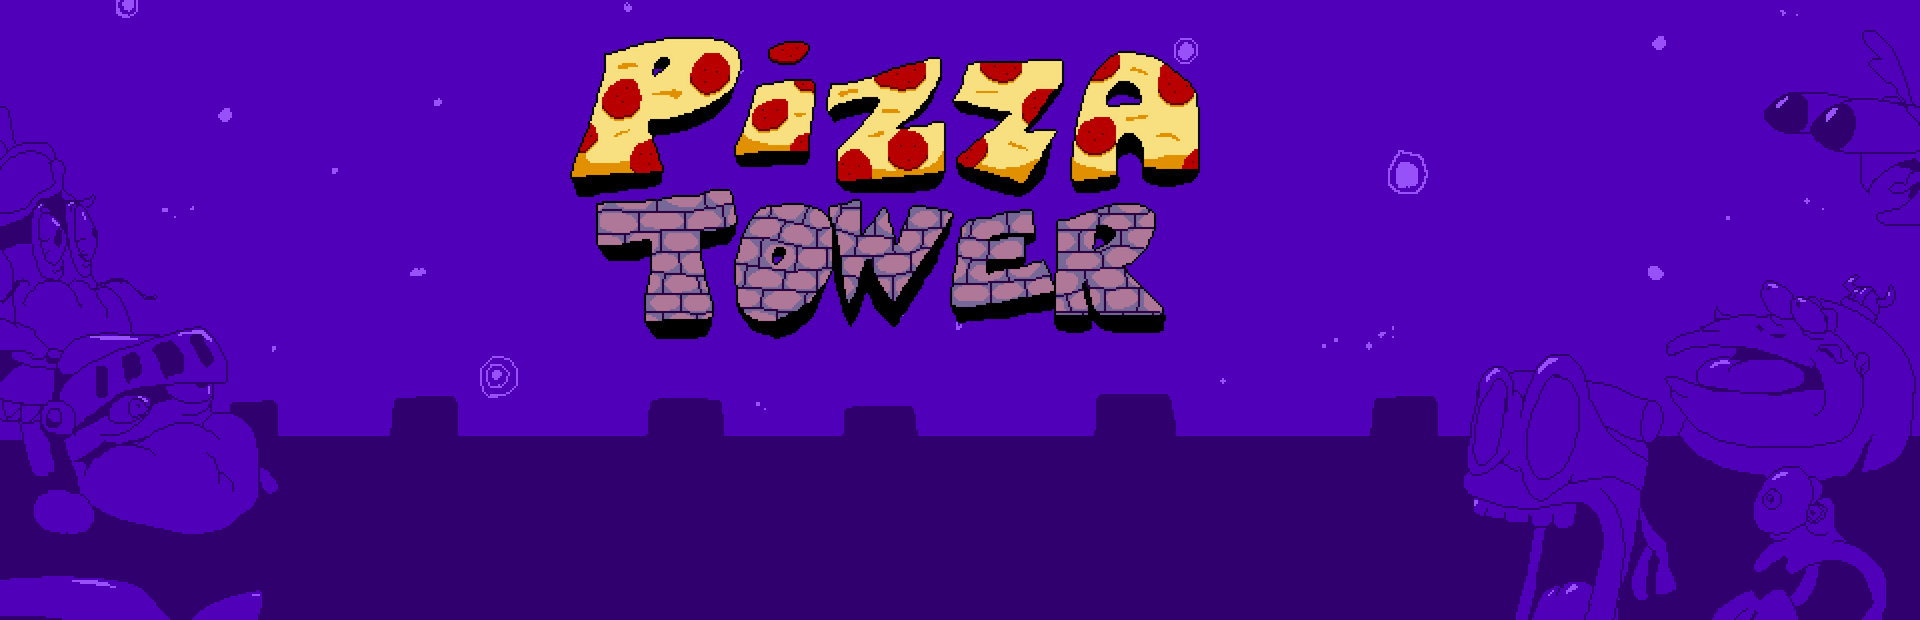 دانلود بازی Pizza Tower برای PC | گیمباتو